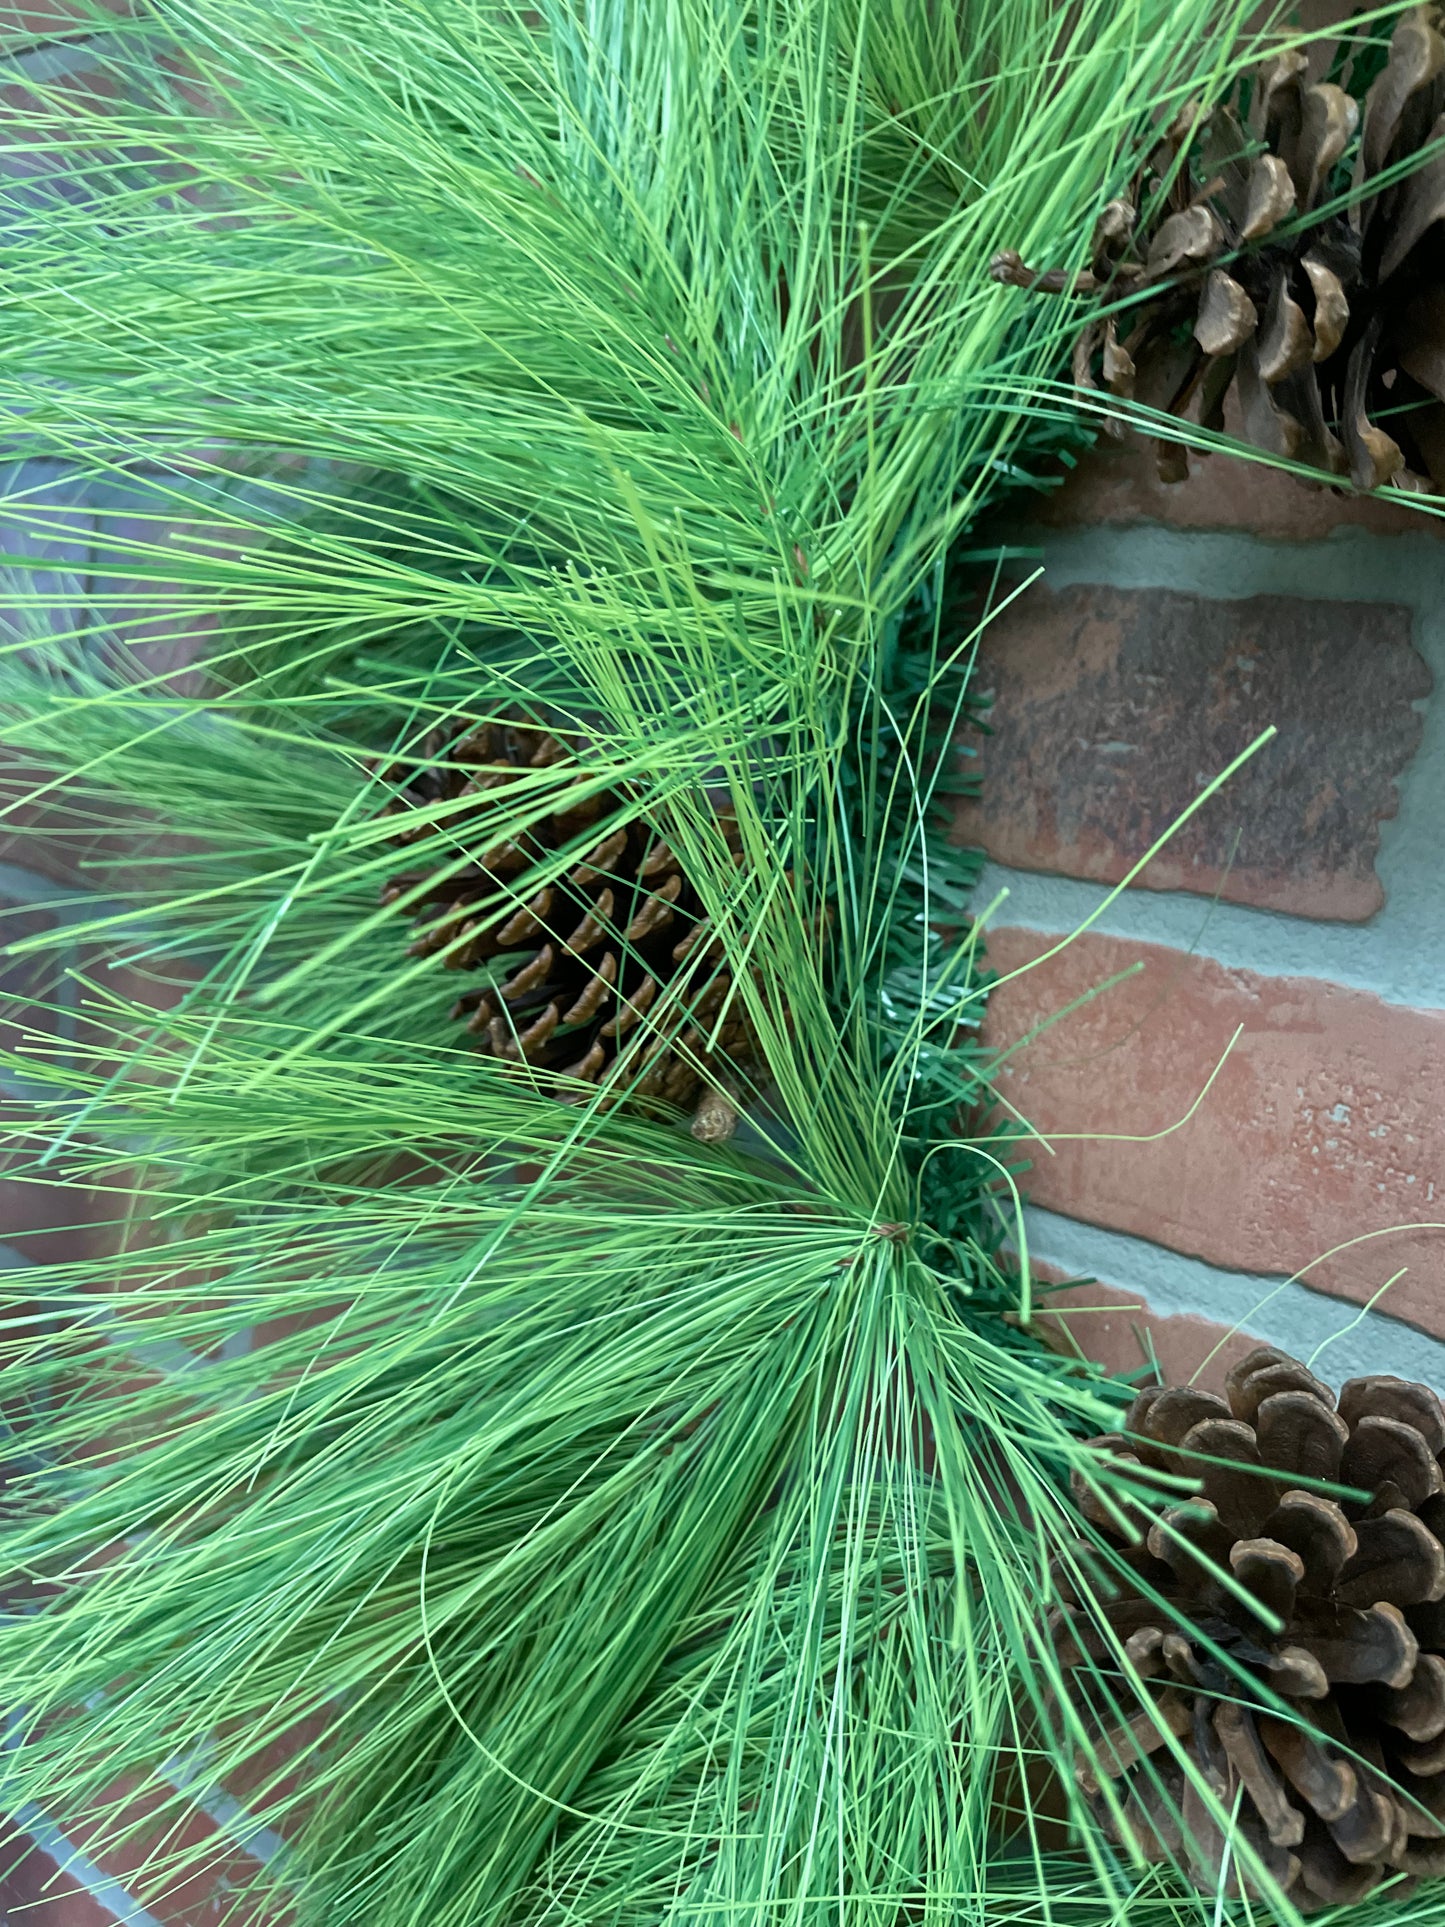 Wreath - Pine w/pinecones